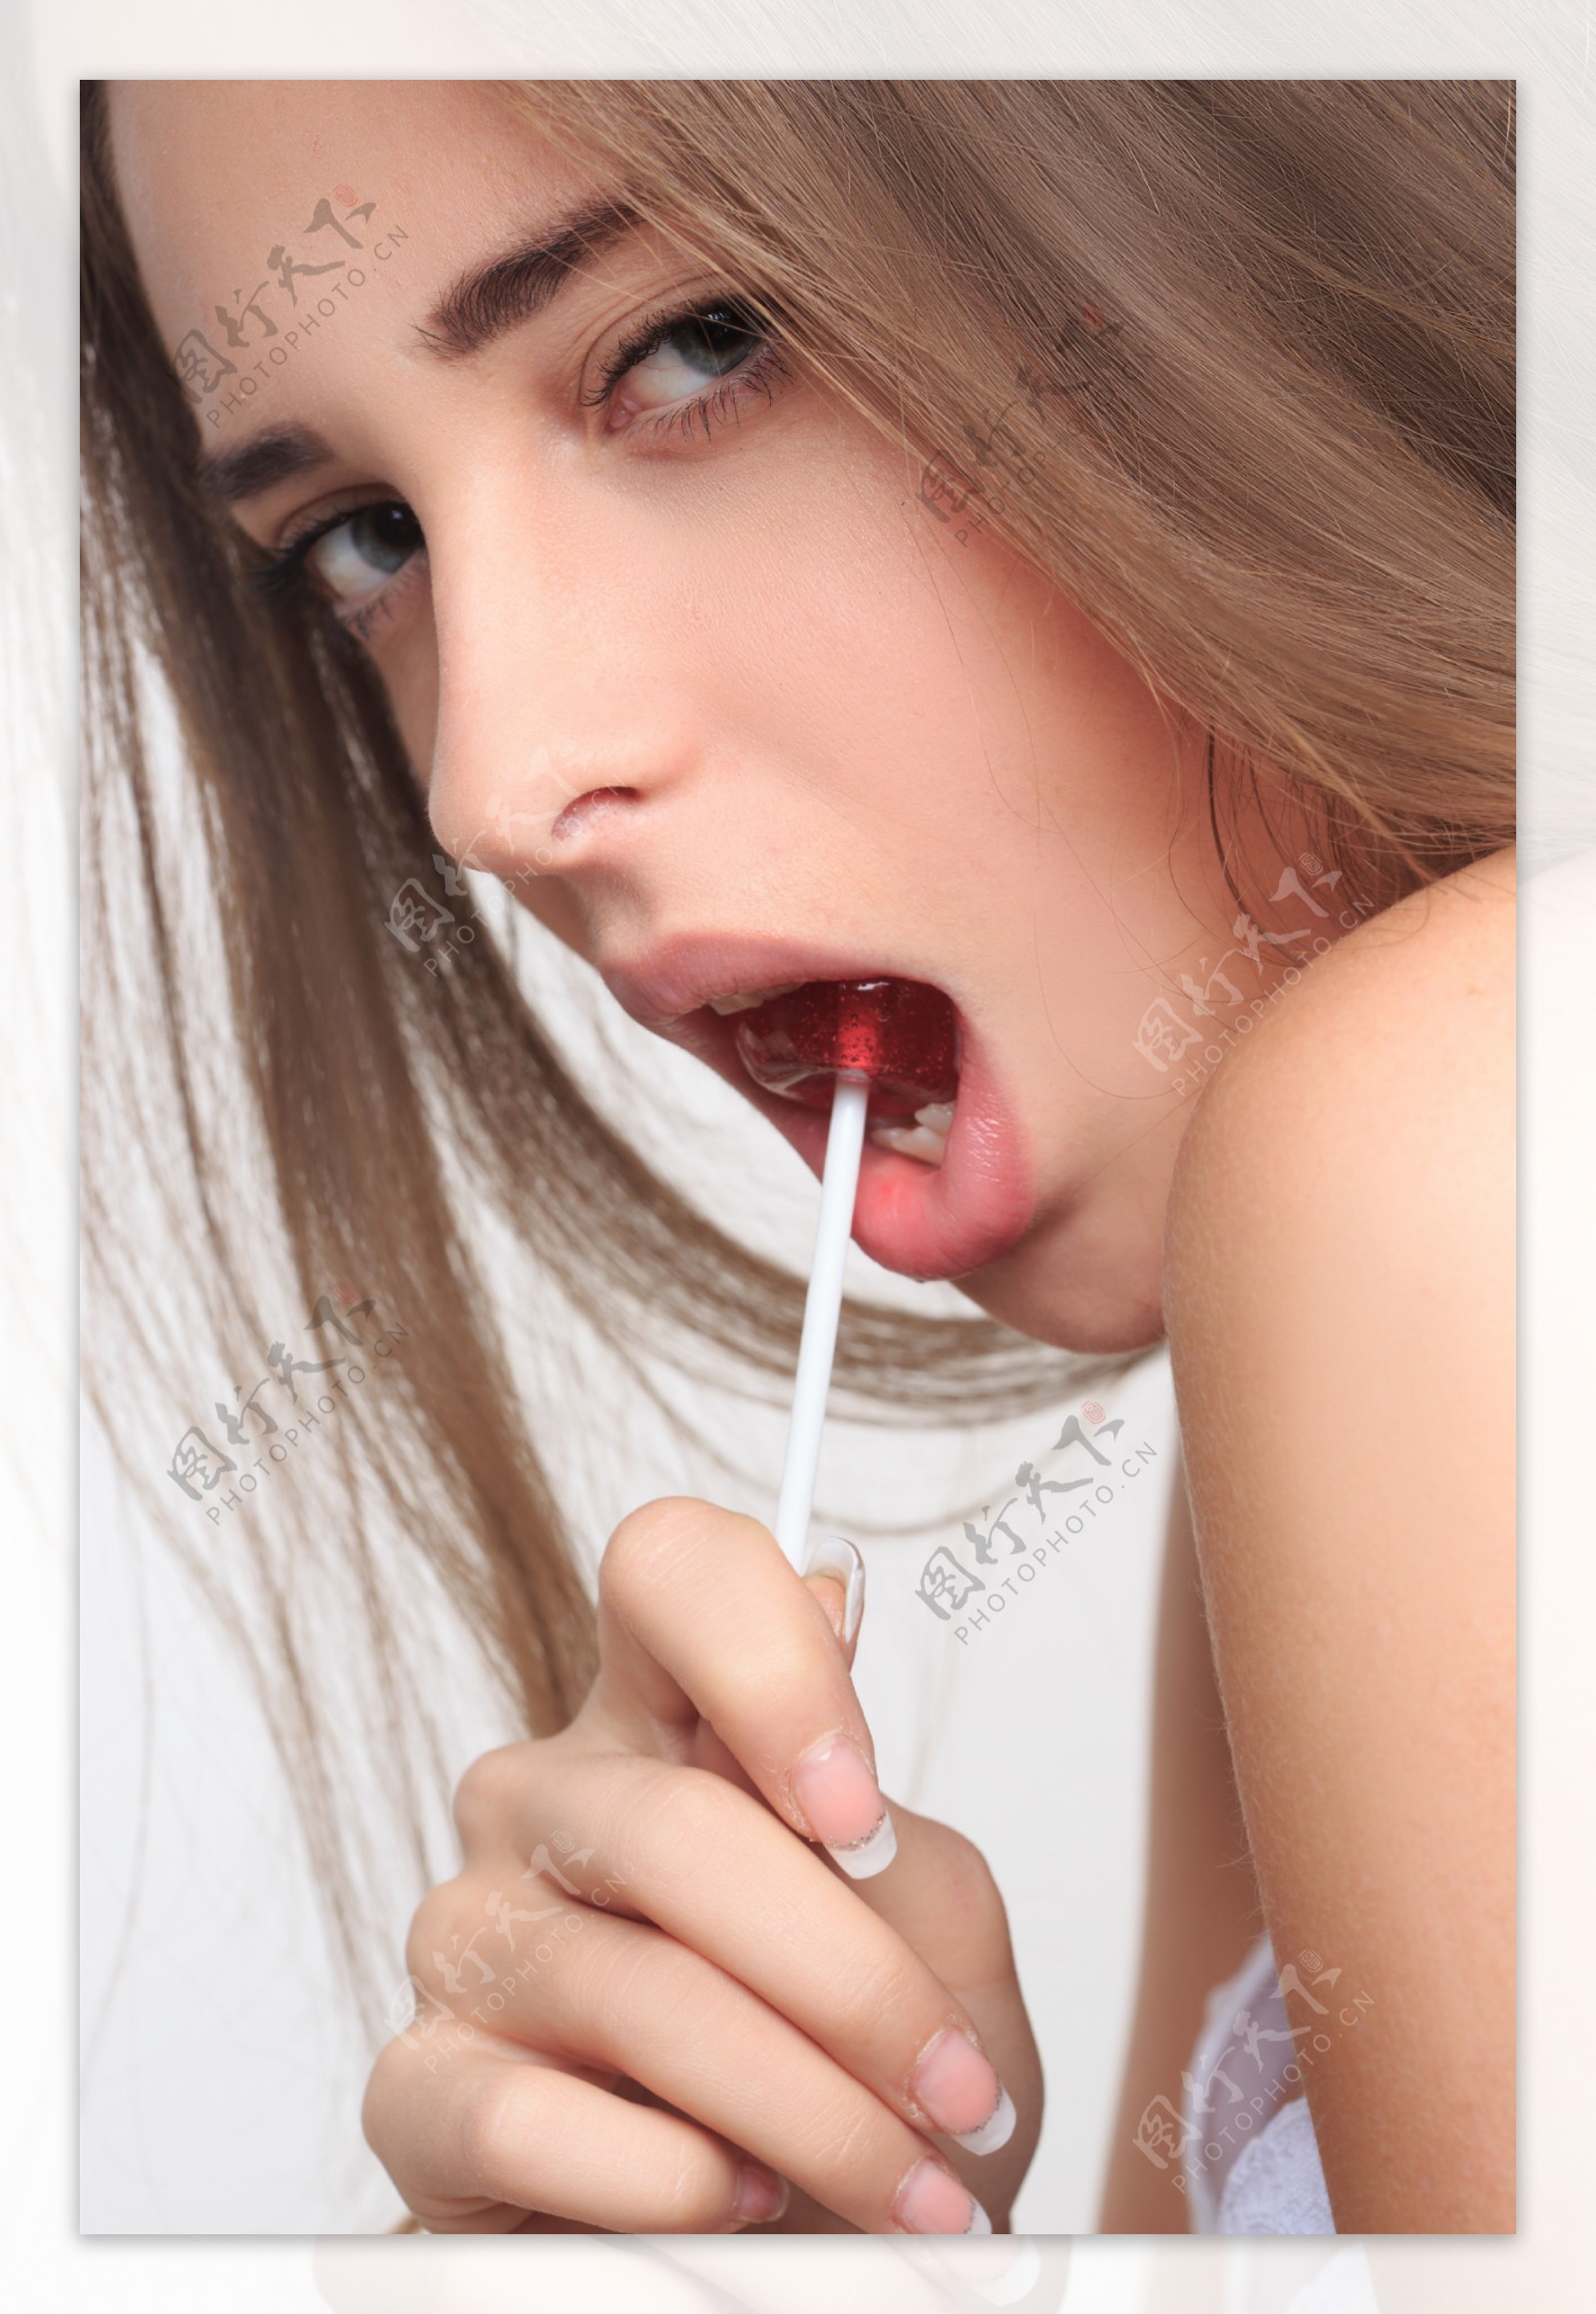 嘴里含棒棒糖的性感美女图片